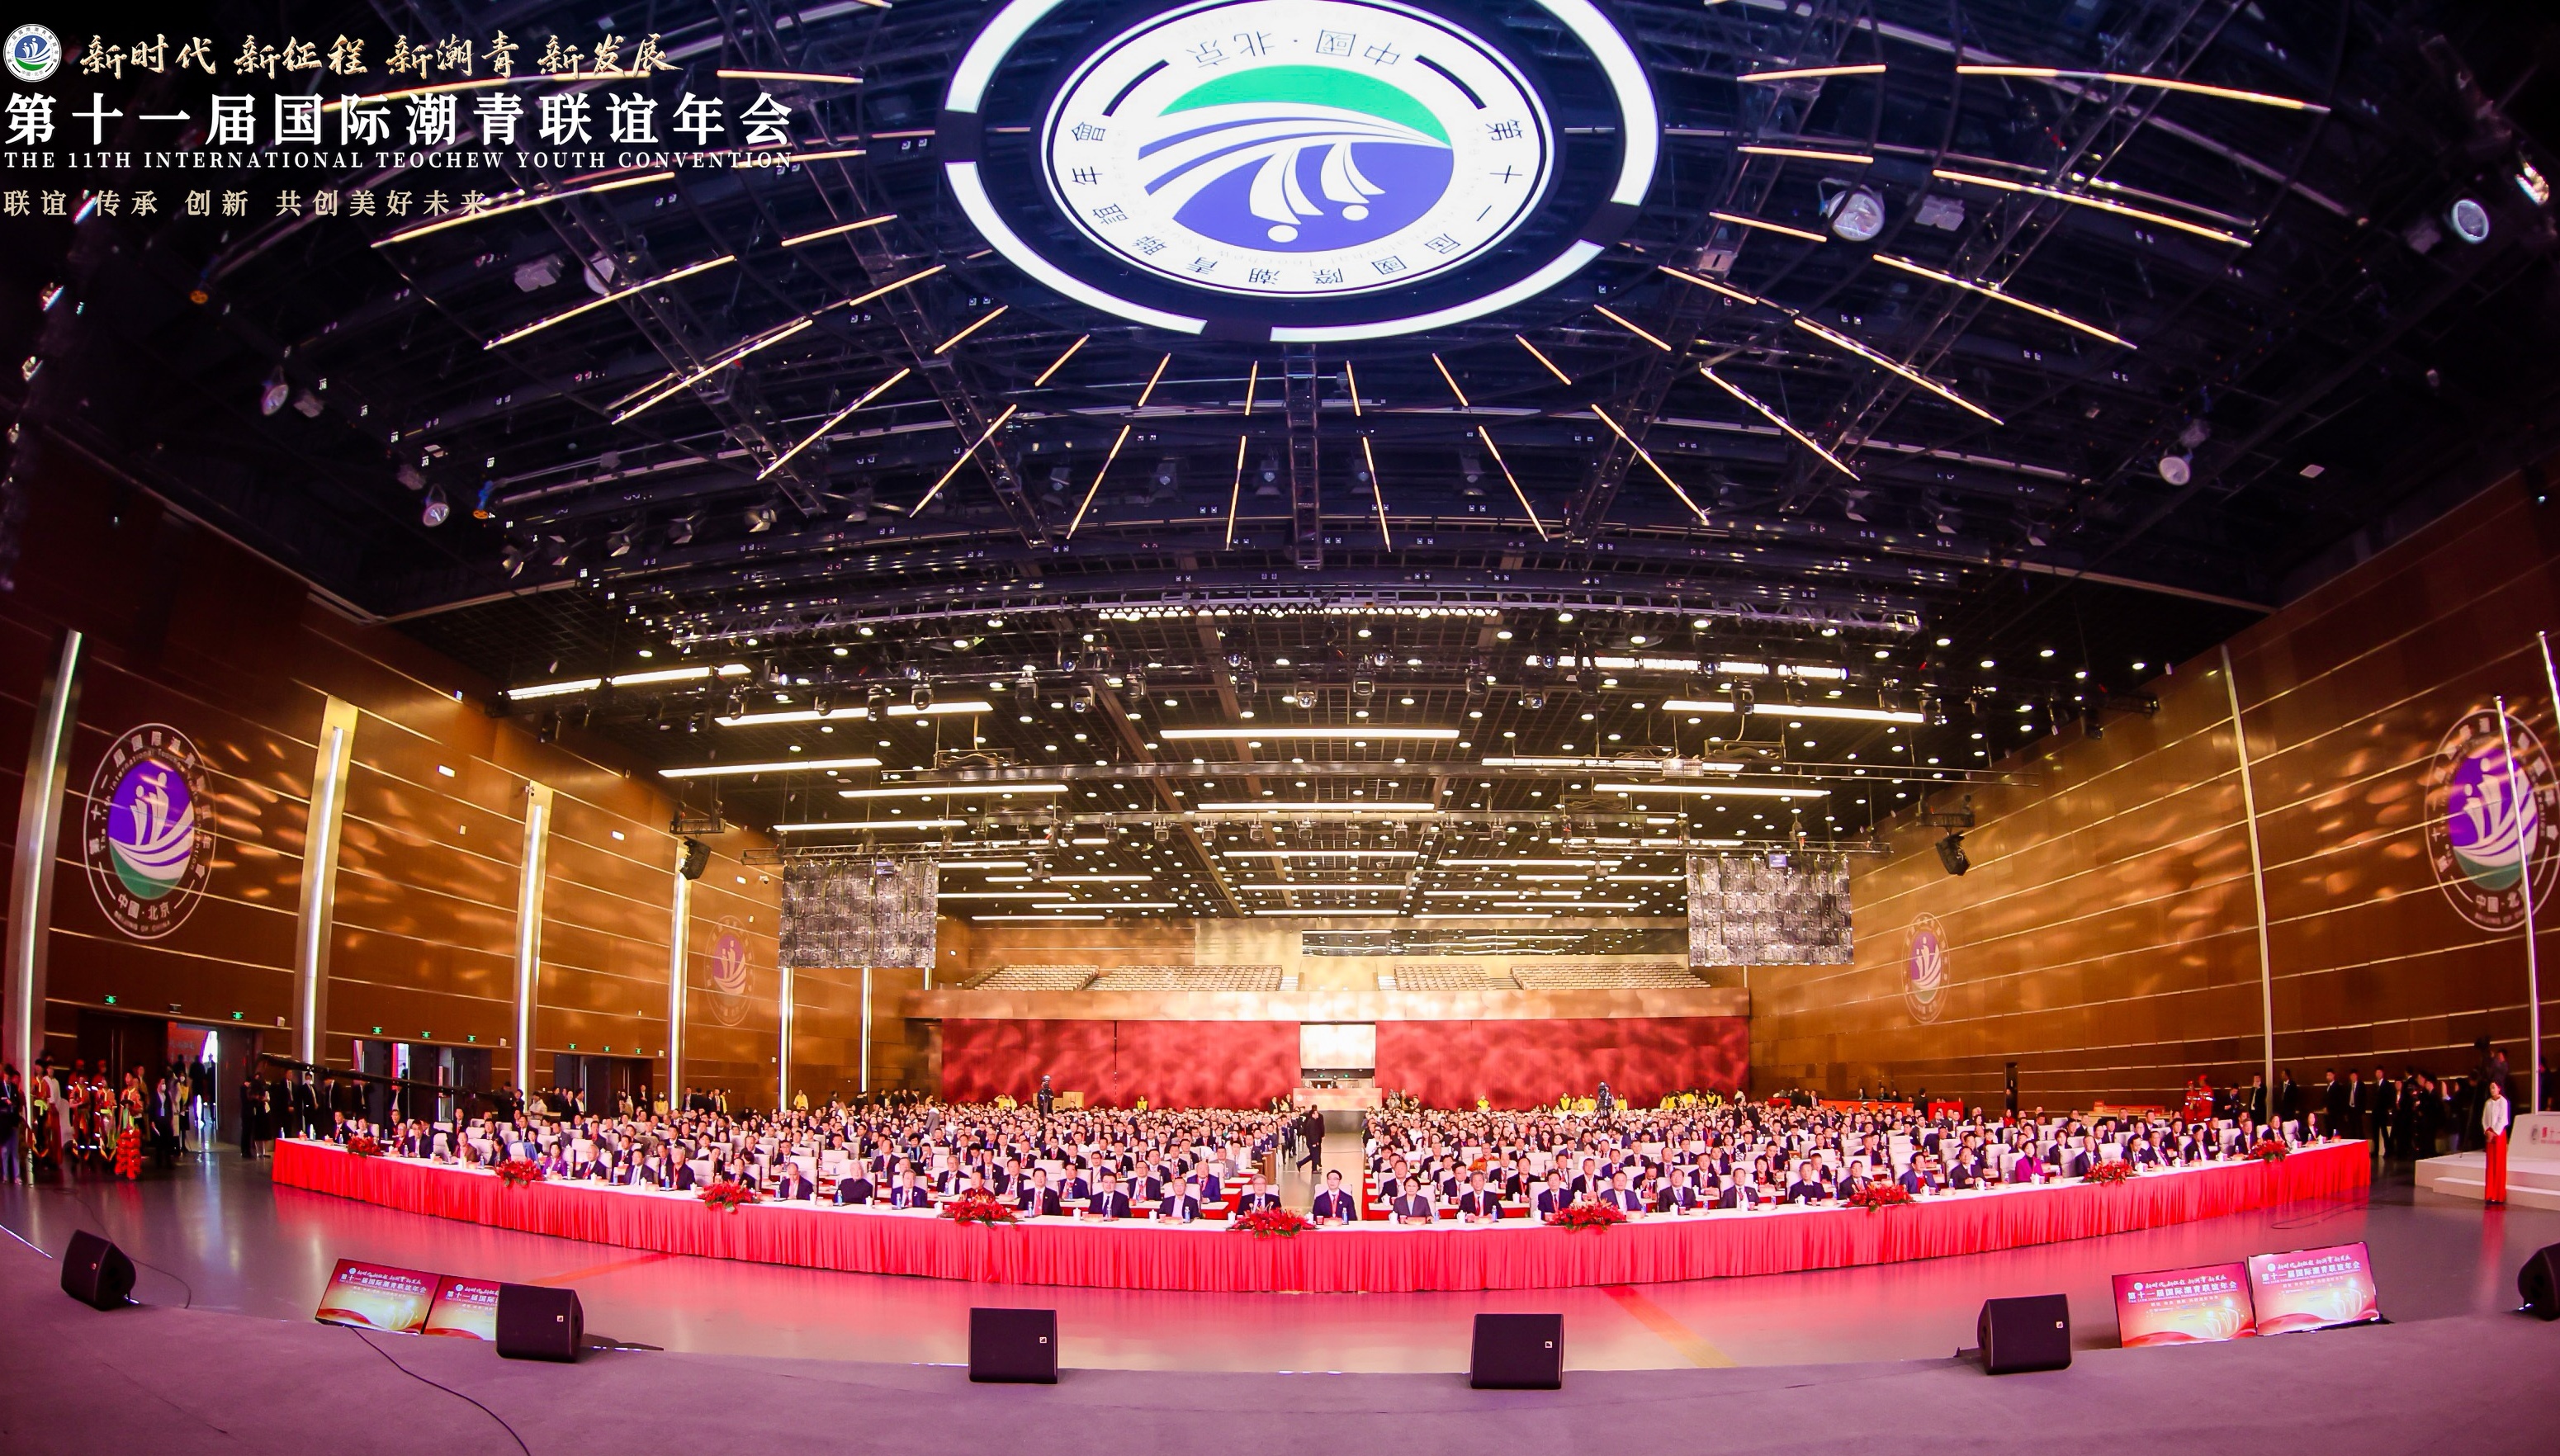 第十一届国际潮青联谊年会在北京隆重举行 大会荣聘我会黄瑞杰会长为荣誉主席(图1)